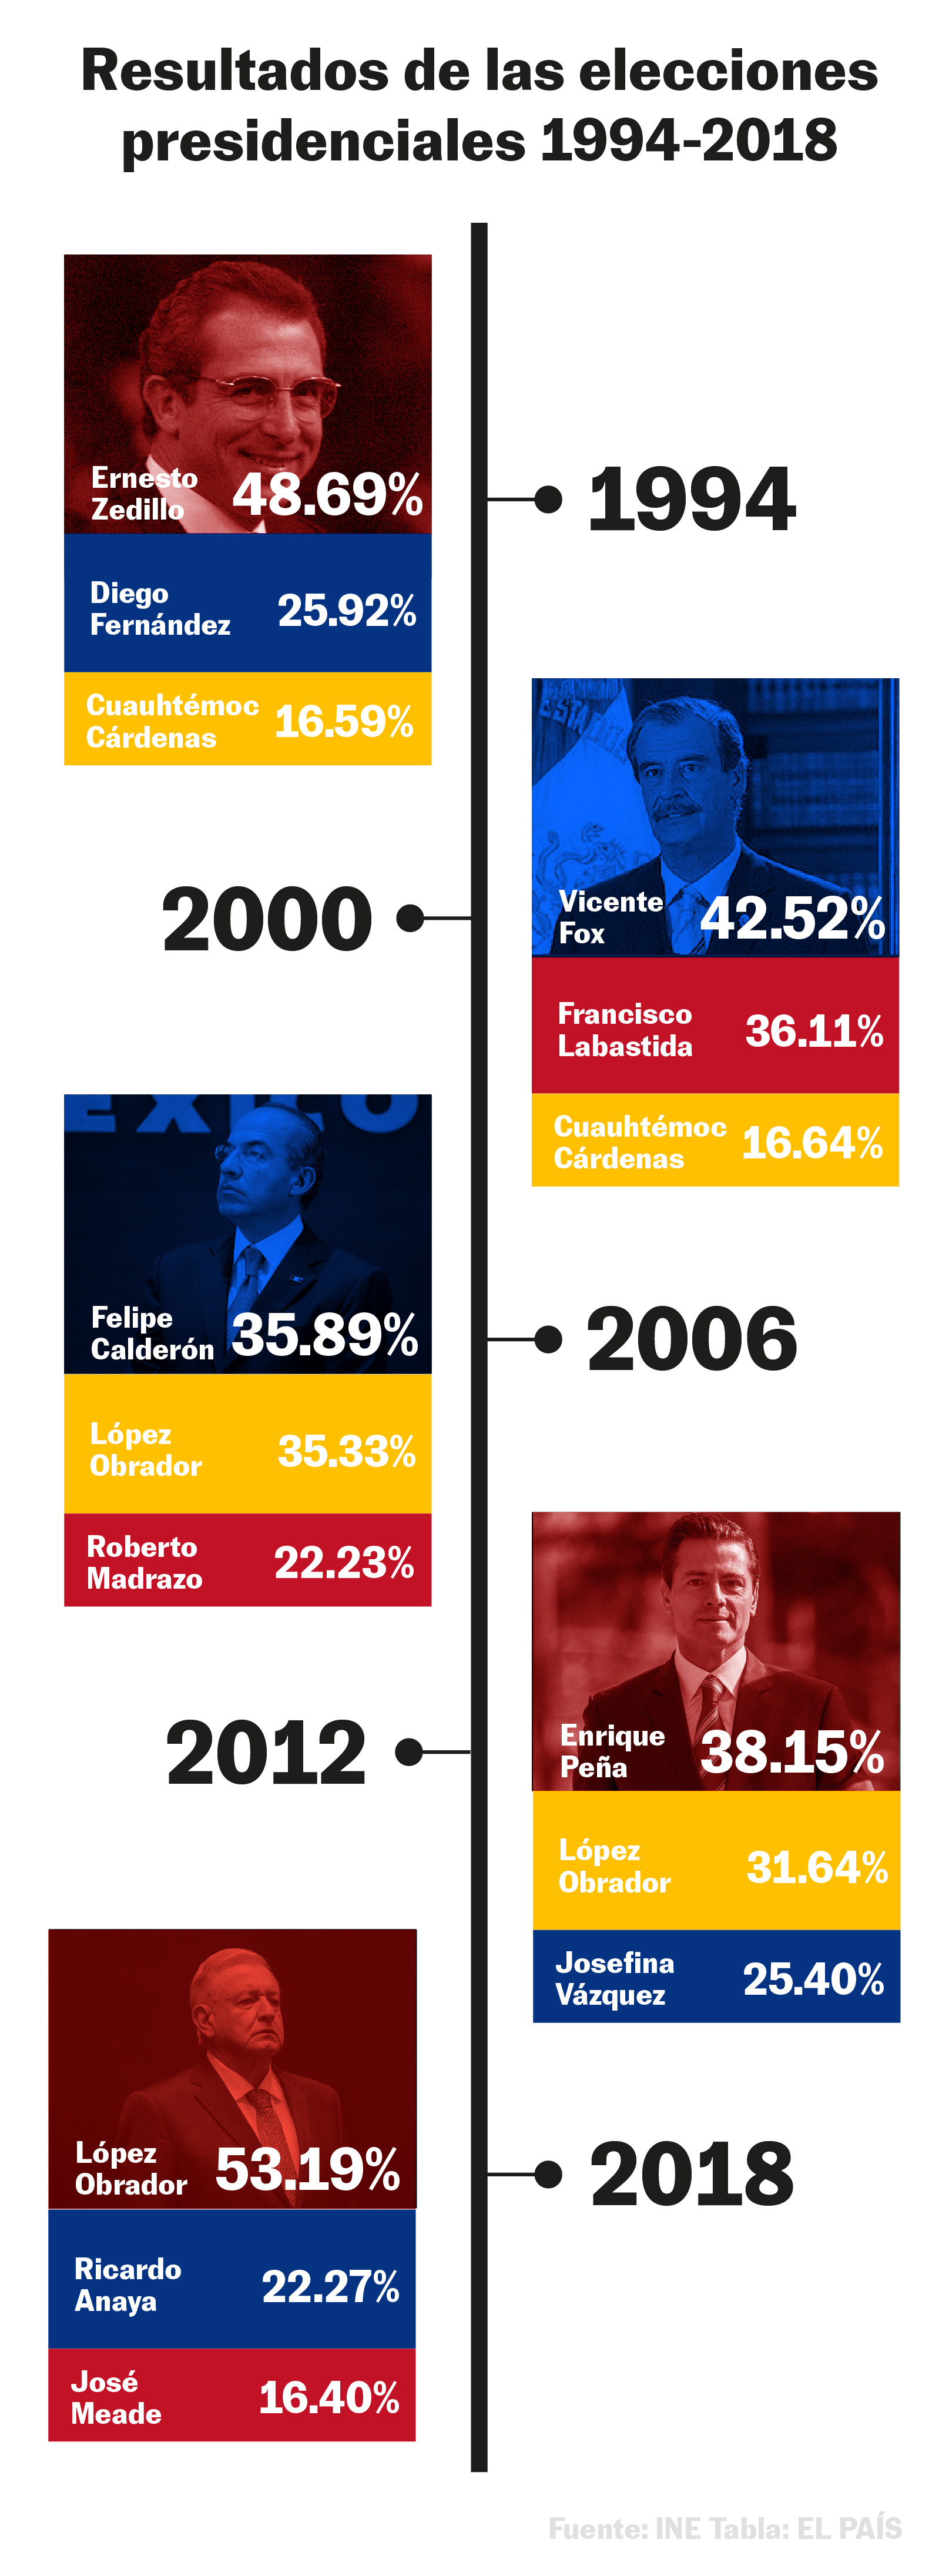 Gráfica histórica de los resultados de las elecciones presidenciales de 1994 a 2018